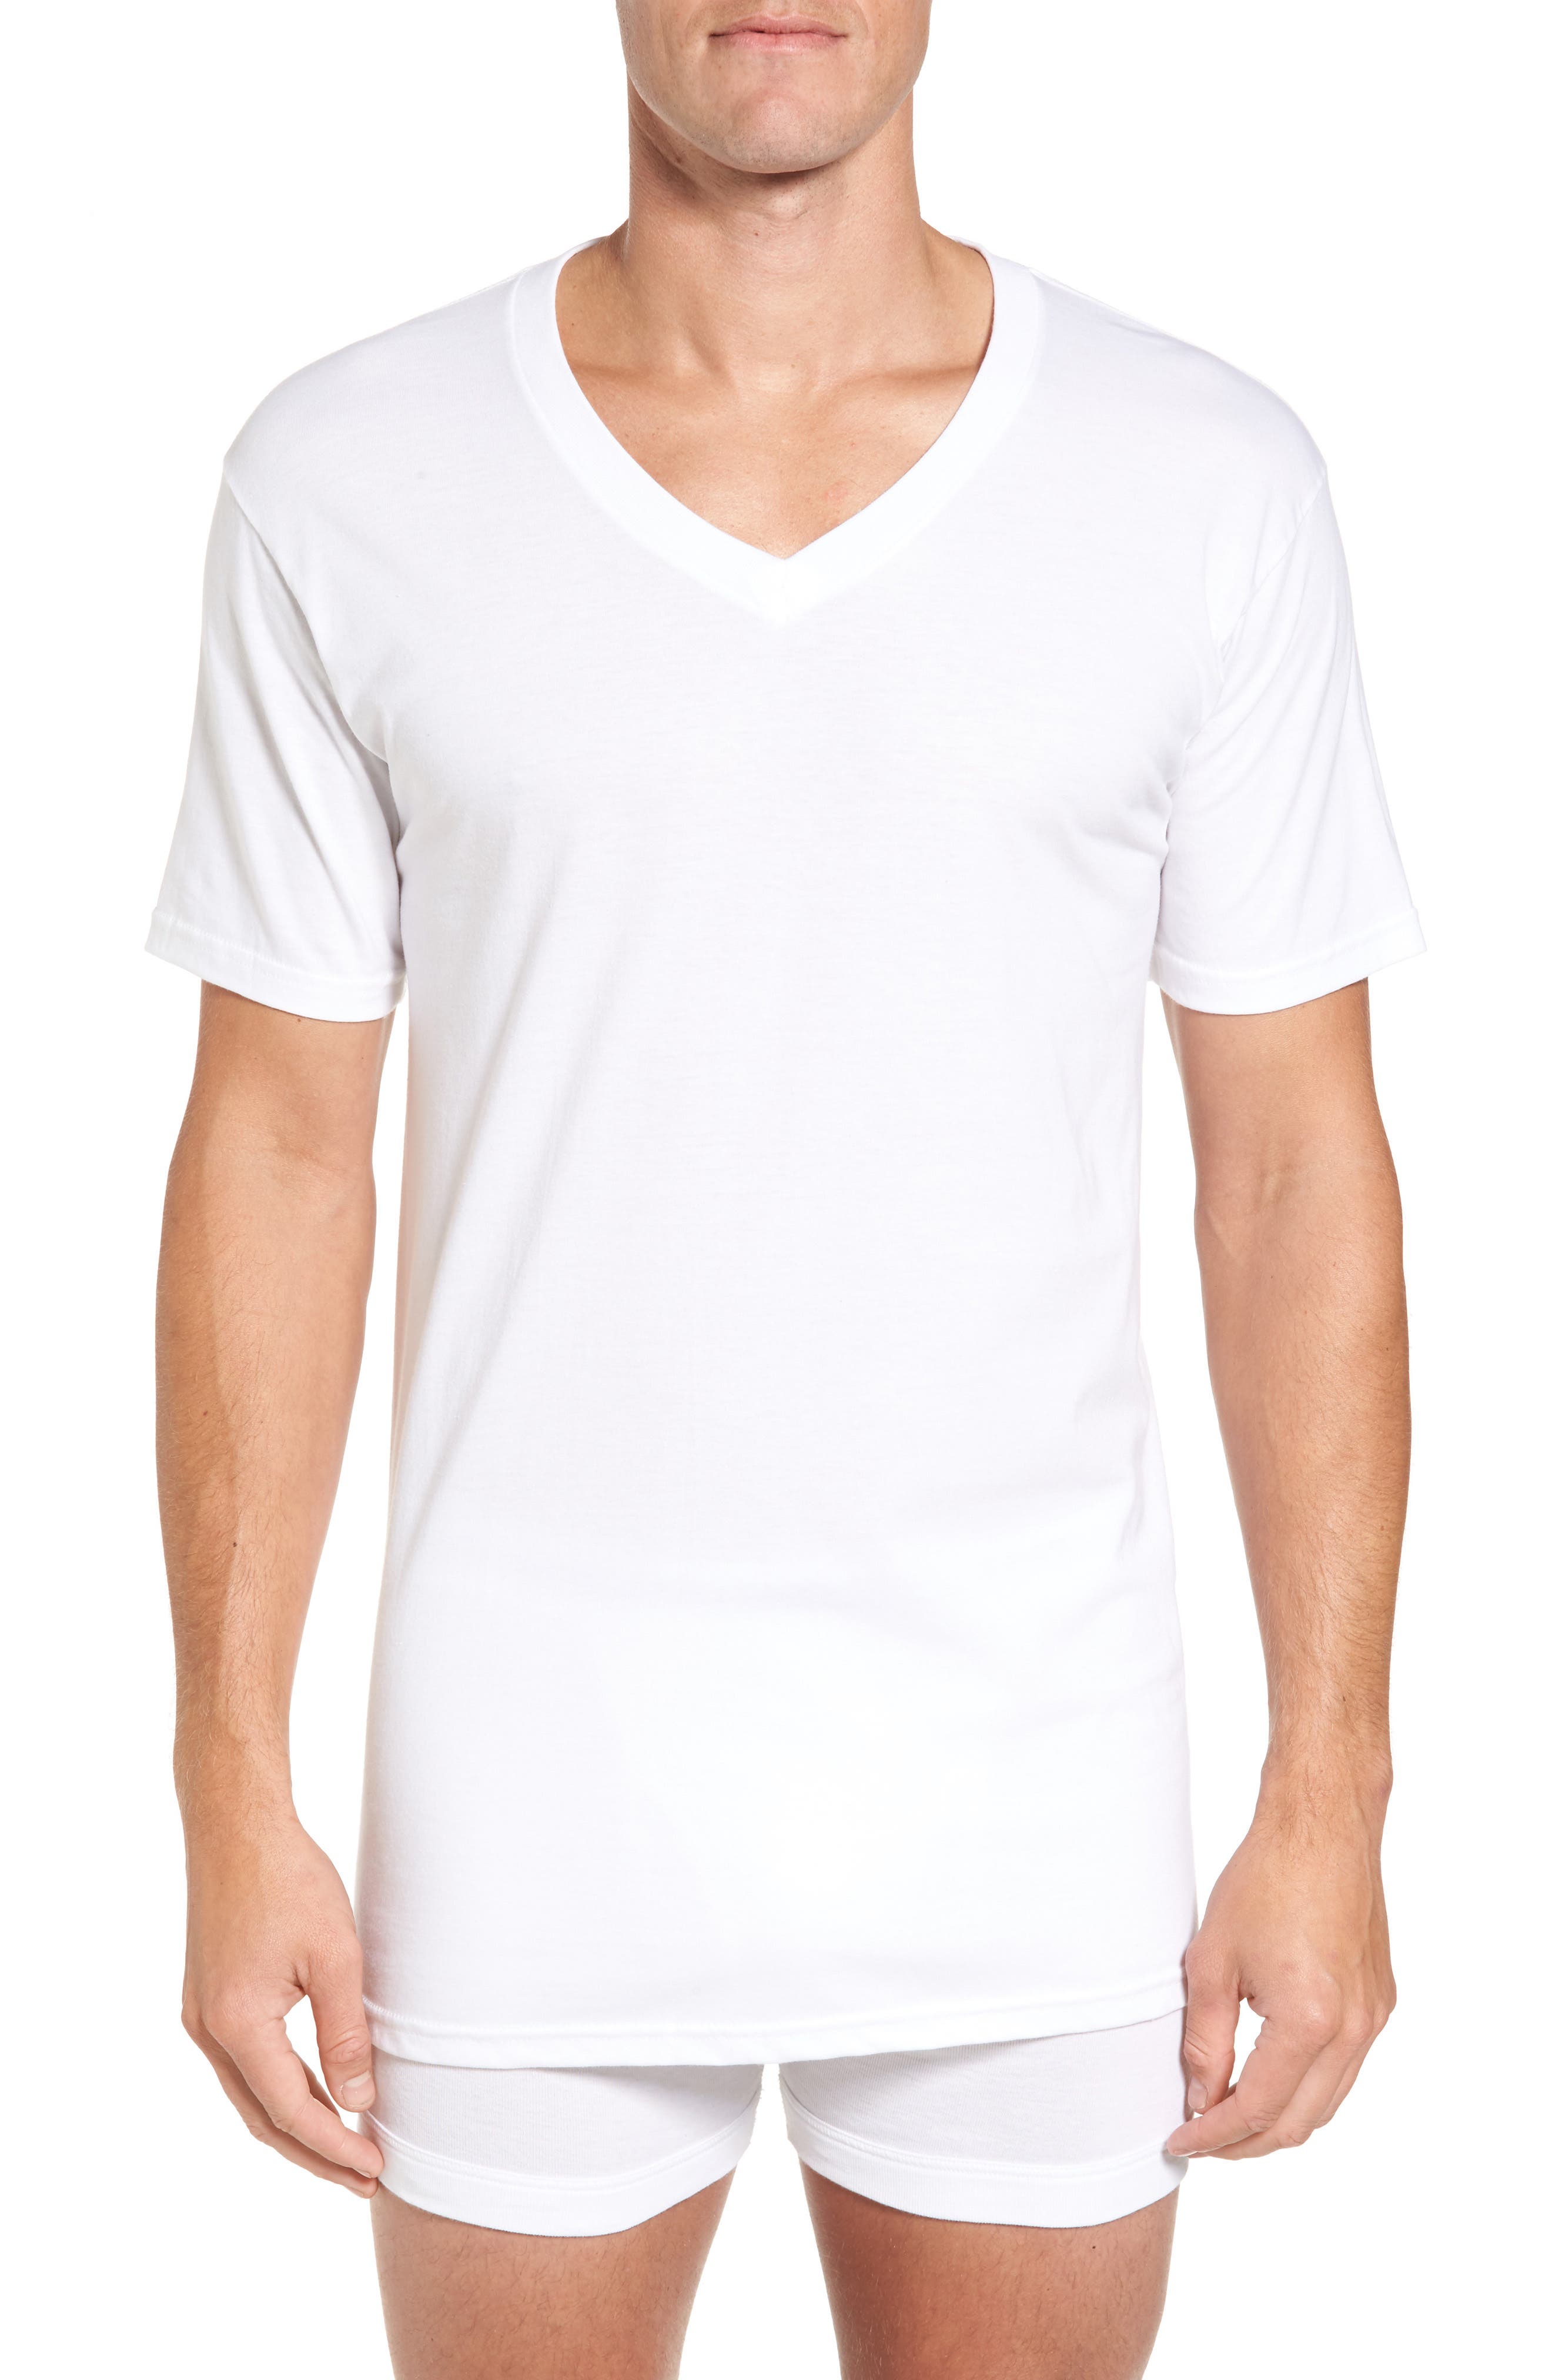 Lacoste Men's Short Sleeve V Neck Pima Cotton Tee Regular Fit T-shirt Boar Grey 